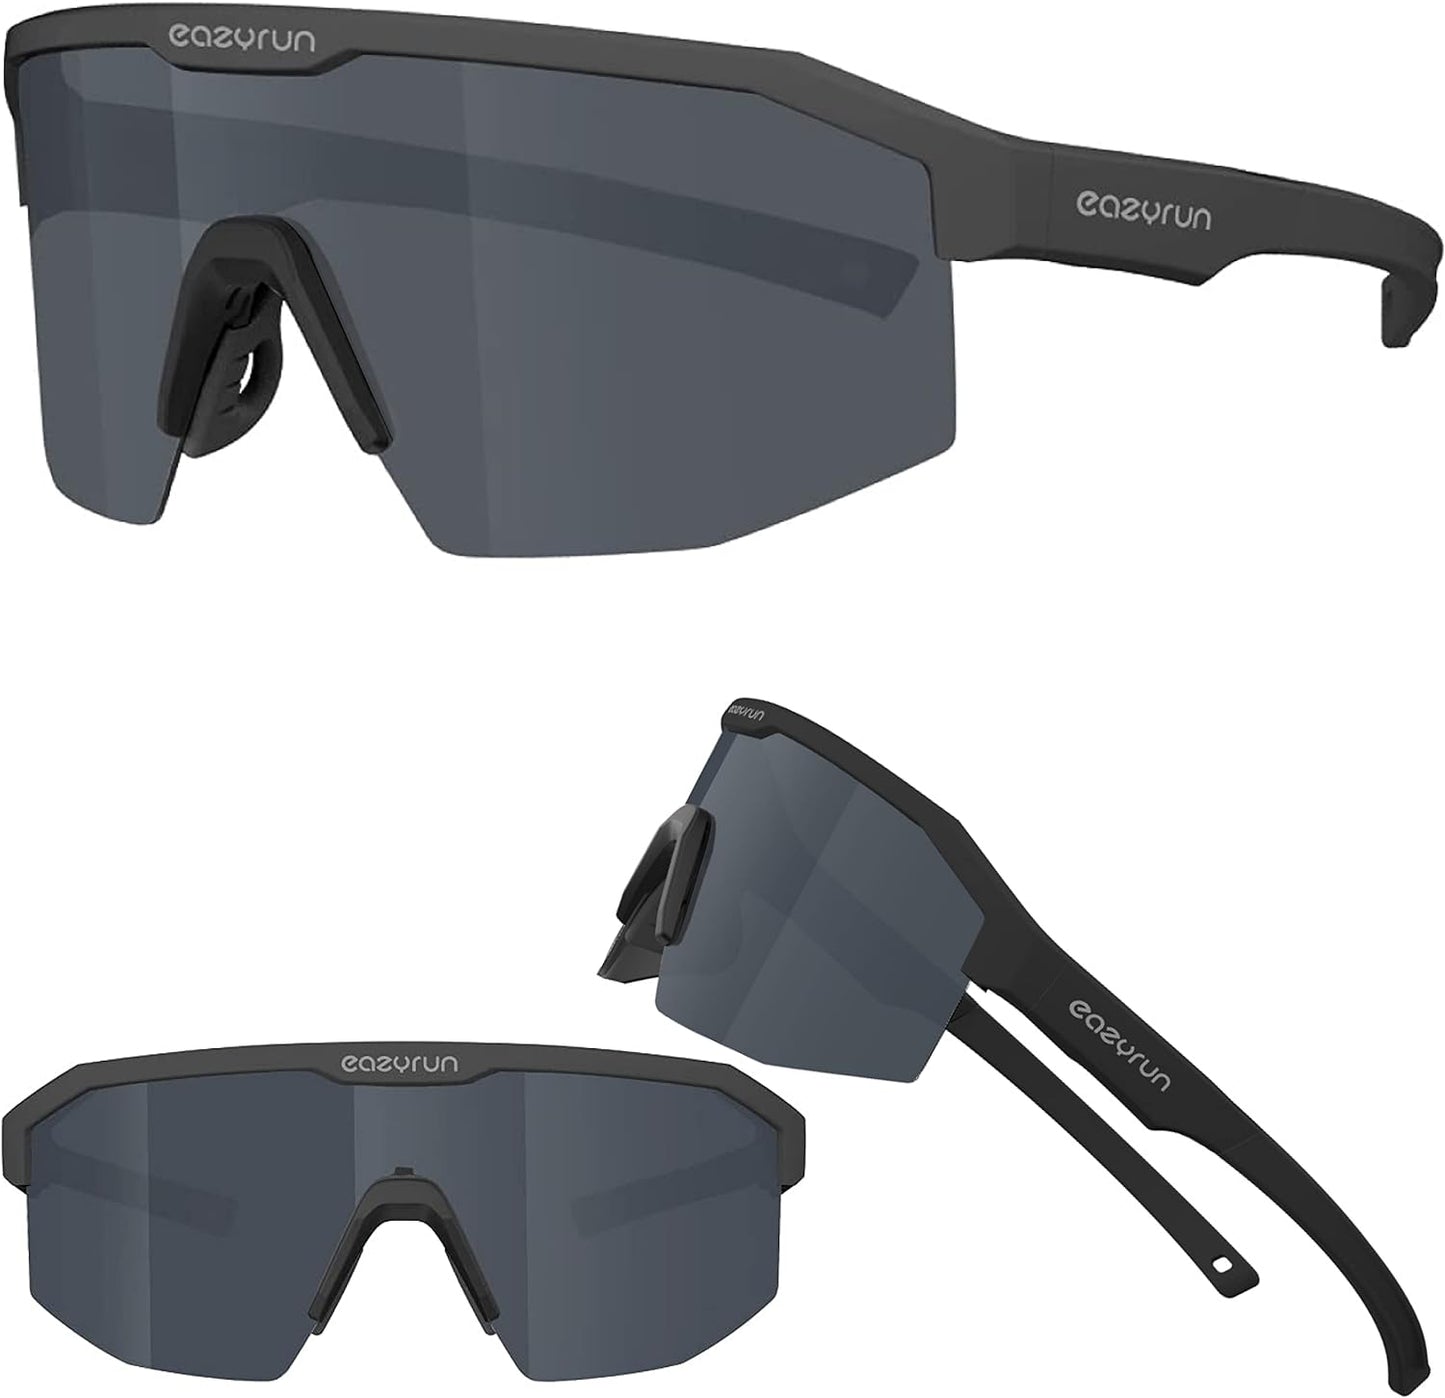 
                  
                    Fahrradbrille / Sportbrille für Damen & Herren – Sonnenbrille für Sport, Laufen, MTB & Outdoor Modell: EAZYRUN
                  
                